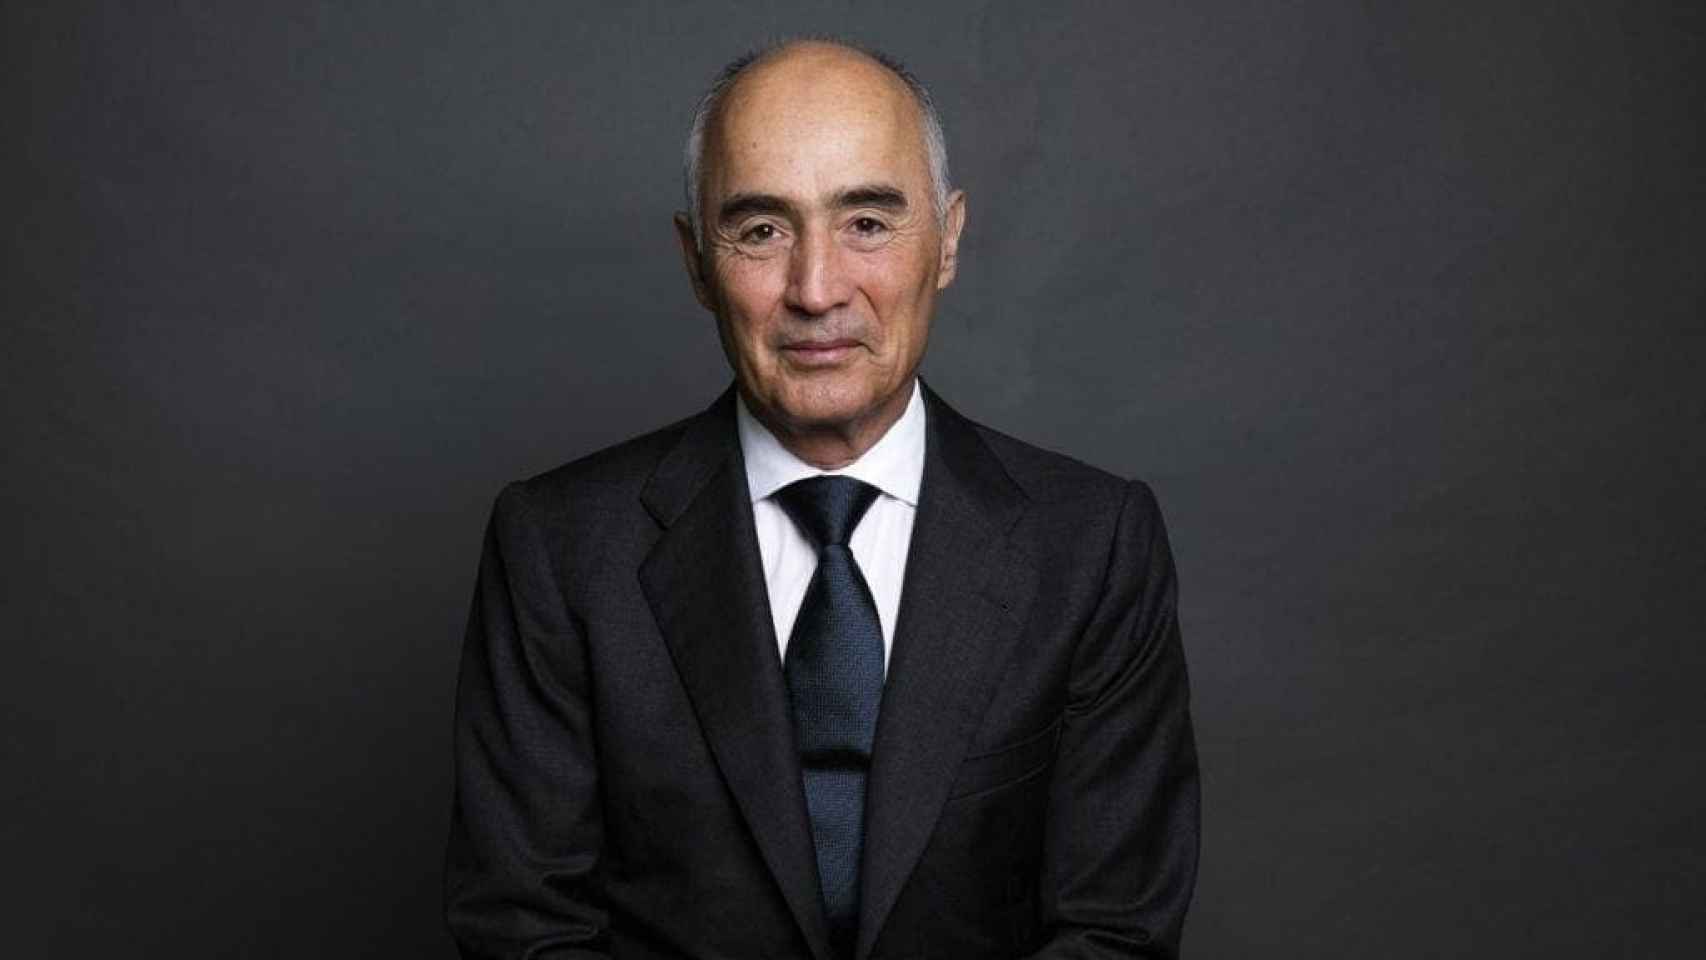 El presidente de Ferrovial, Rafael del Pino.